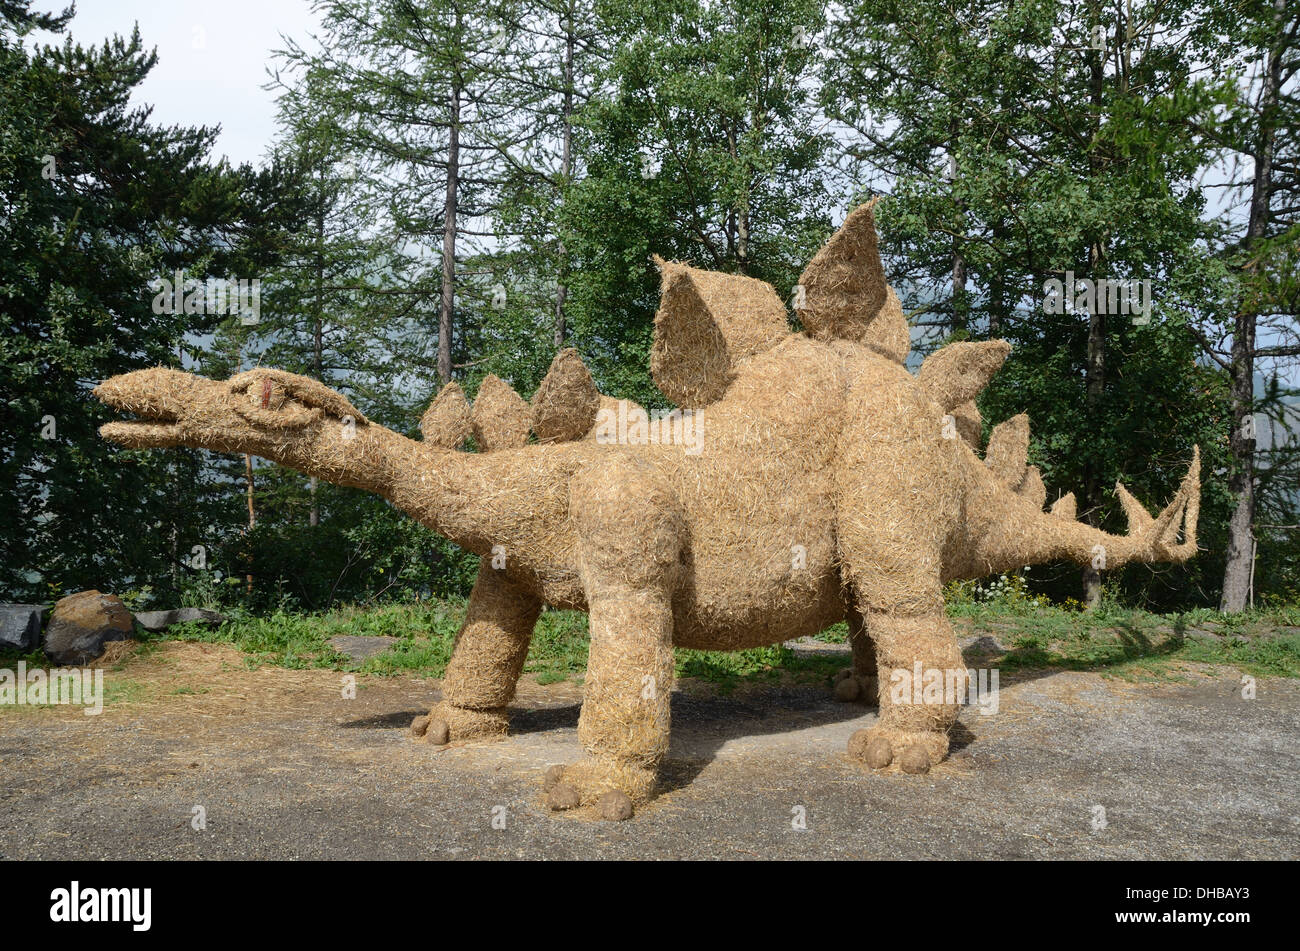 Sculpture de paille de dinosaure Stégosaure Banque D'Images